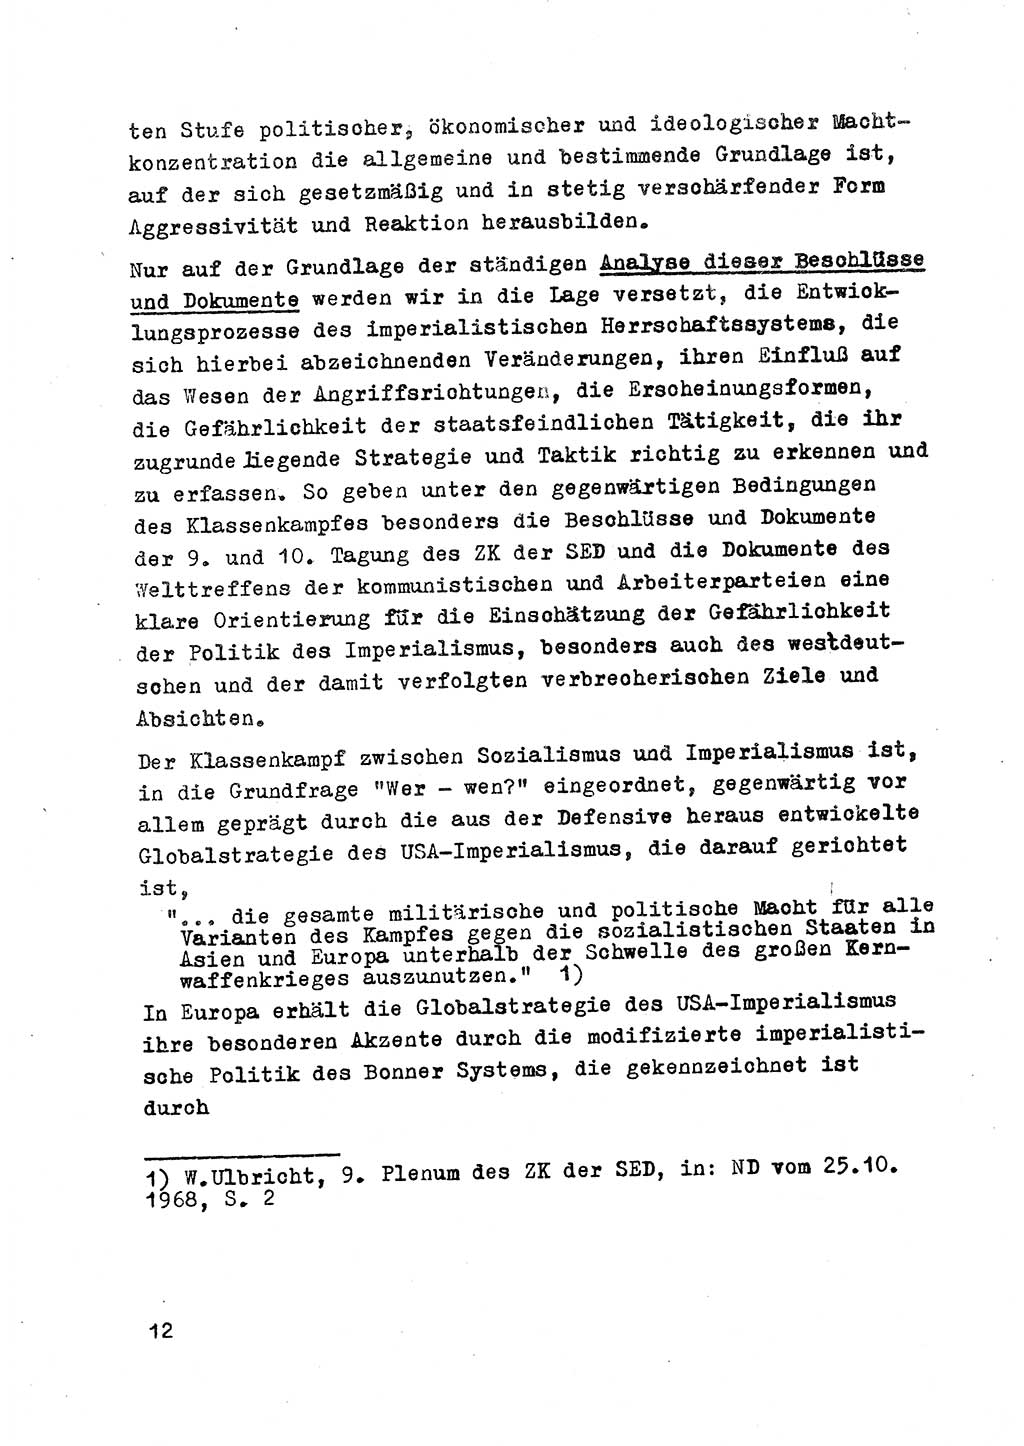 Strafrecht der DDR (Deutsche Demokratische Republik), Besonderer Teil, Lehrmaterial, Heft 2 1969, Seite 12 (Strafr. DDR BT Lehrmat. H. 2 1969, S. 12)